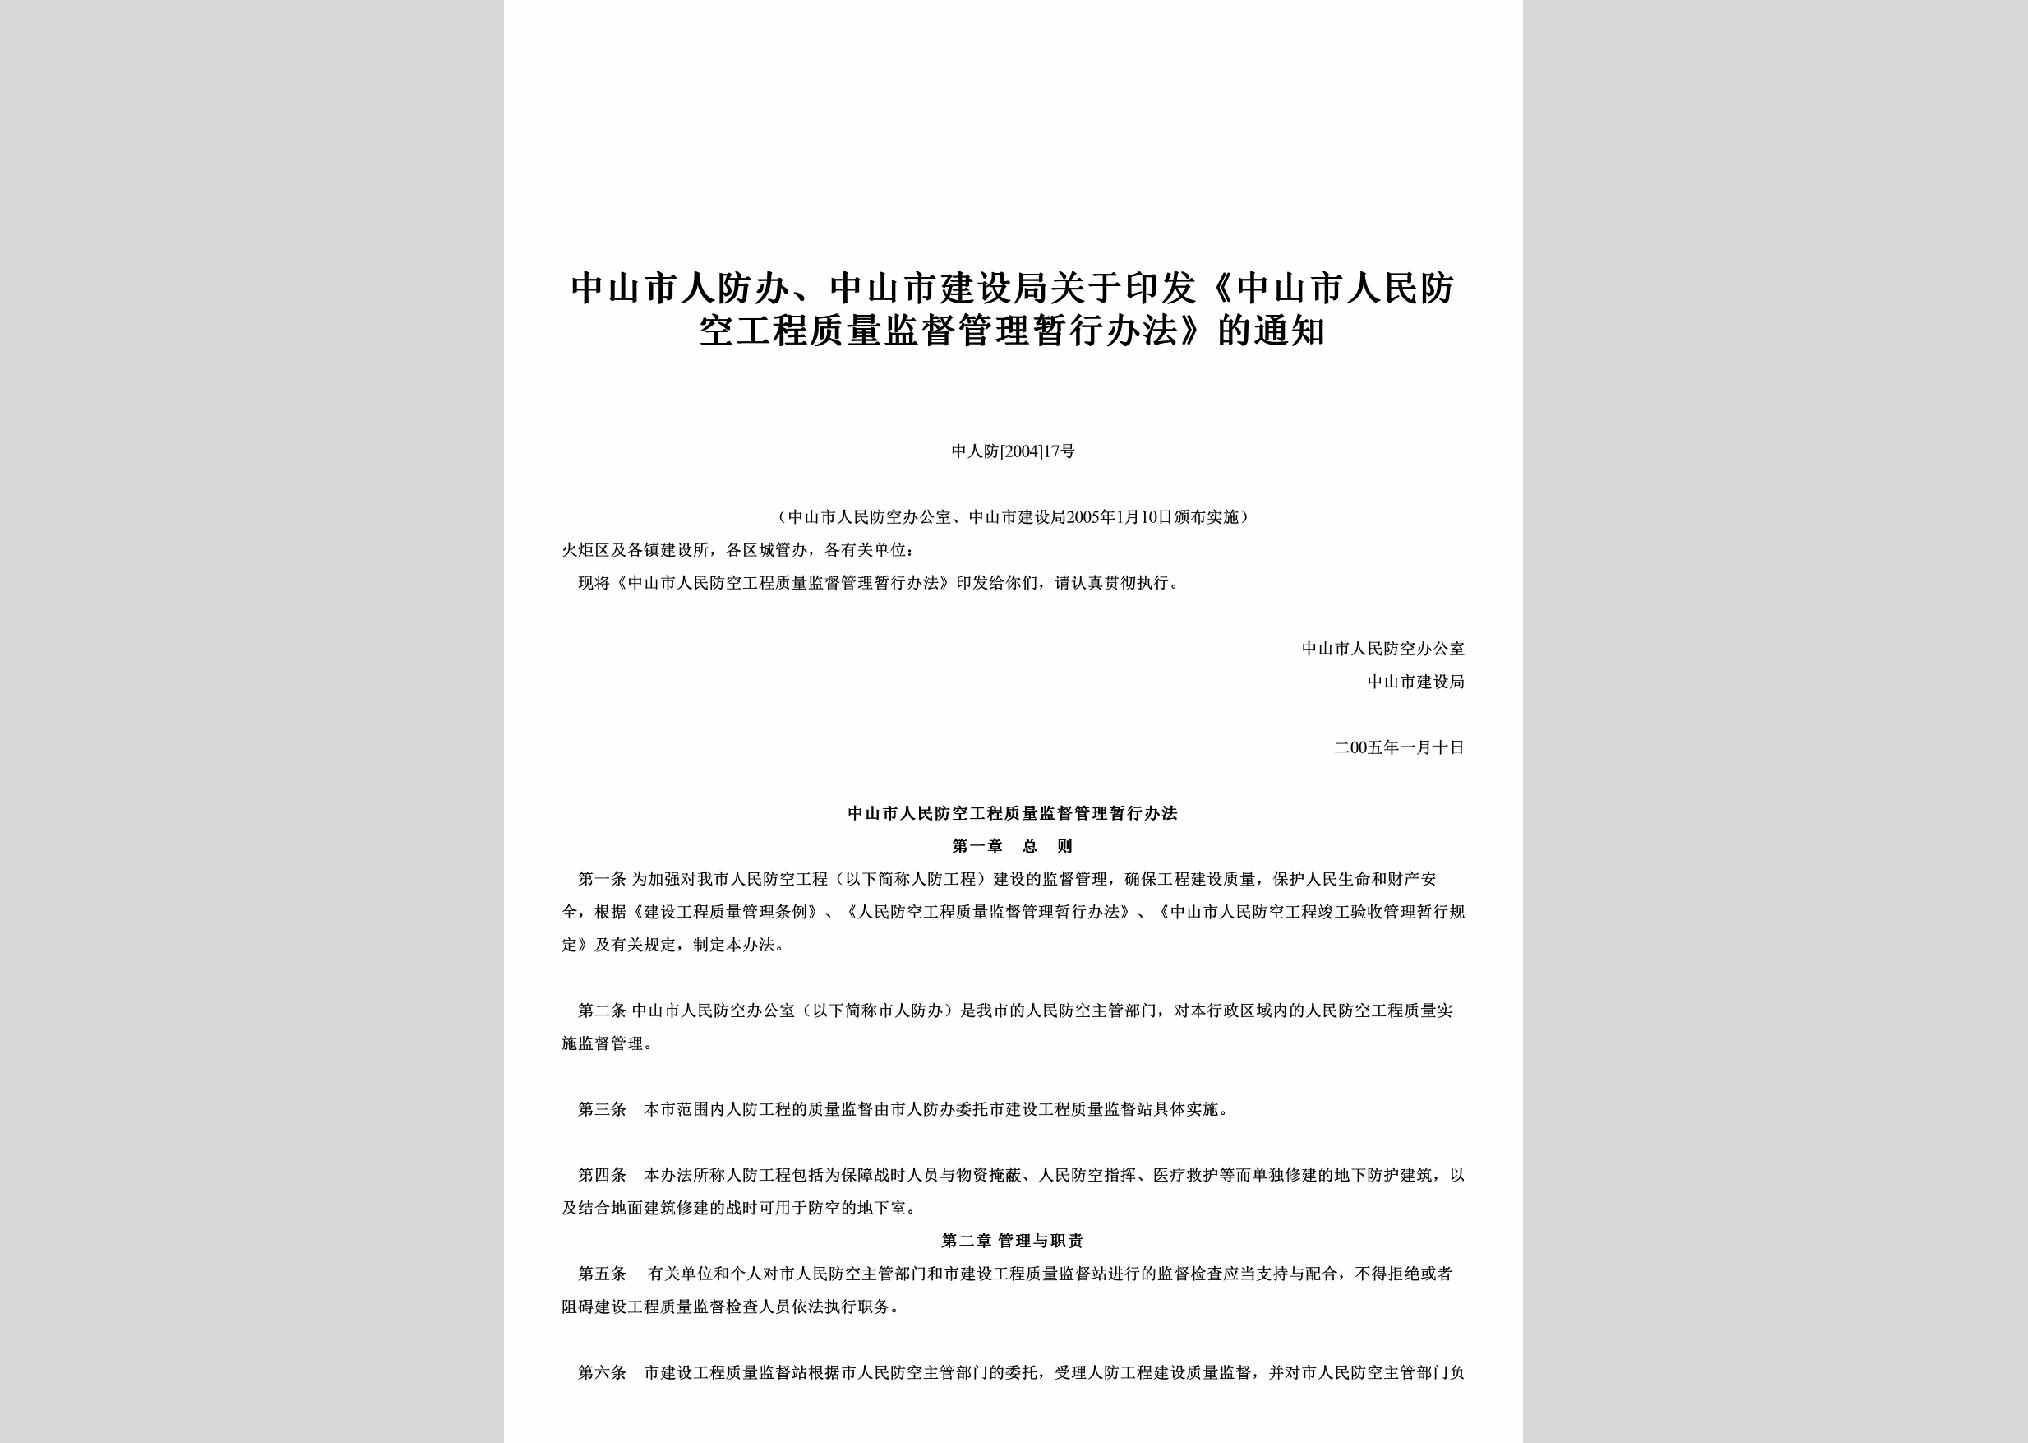 中人防[2004]17号：关于印发《中山市人民防空工程质量监督管理暂行办法》的通知